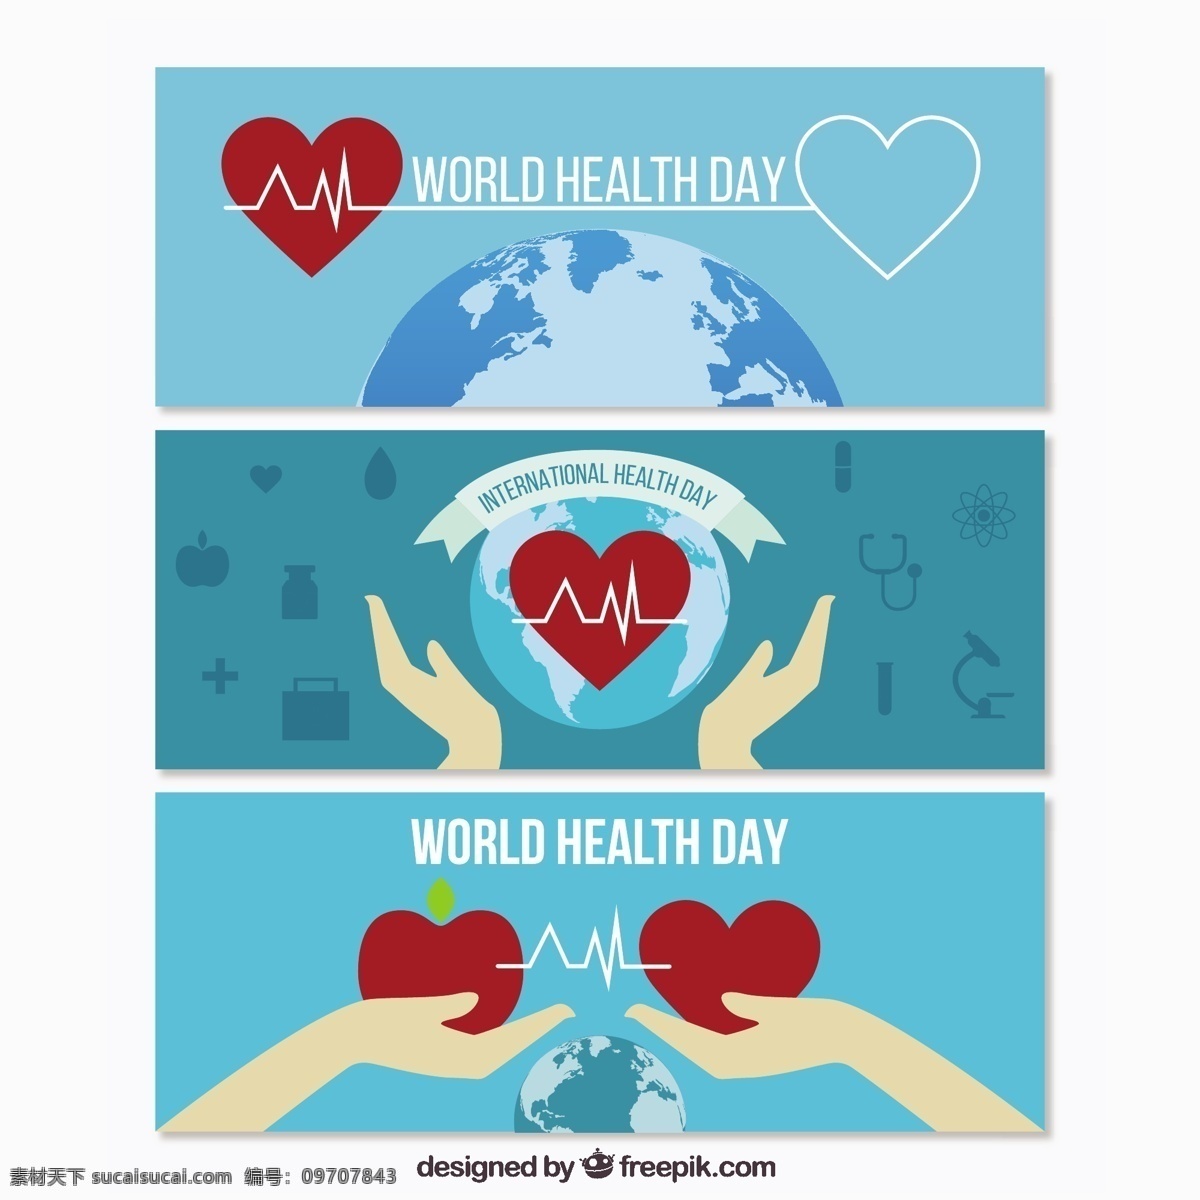 地球 心 世界 健康 日 旗 旗帜 食品 心脏 医疗 横幅 医生 蓝 苹果 医院 健康食品 保健 生活方式 国际 白色